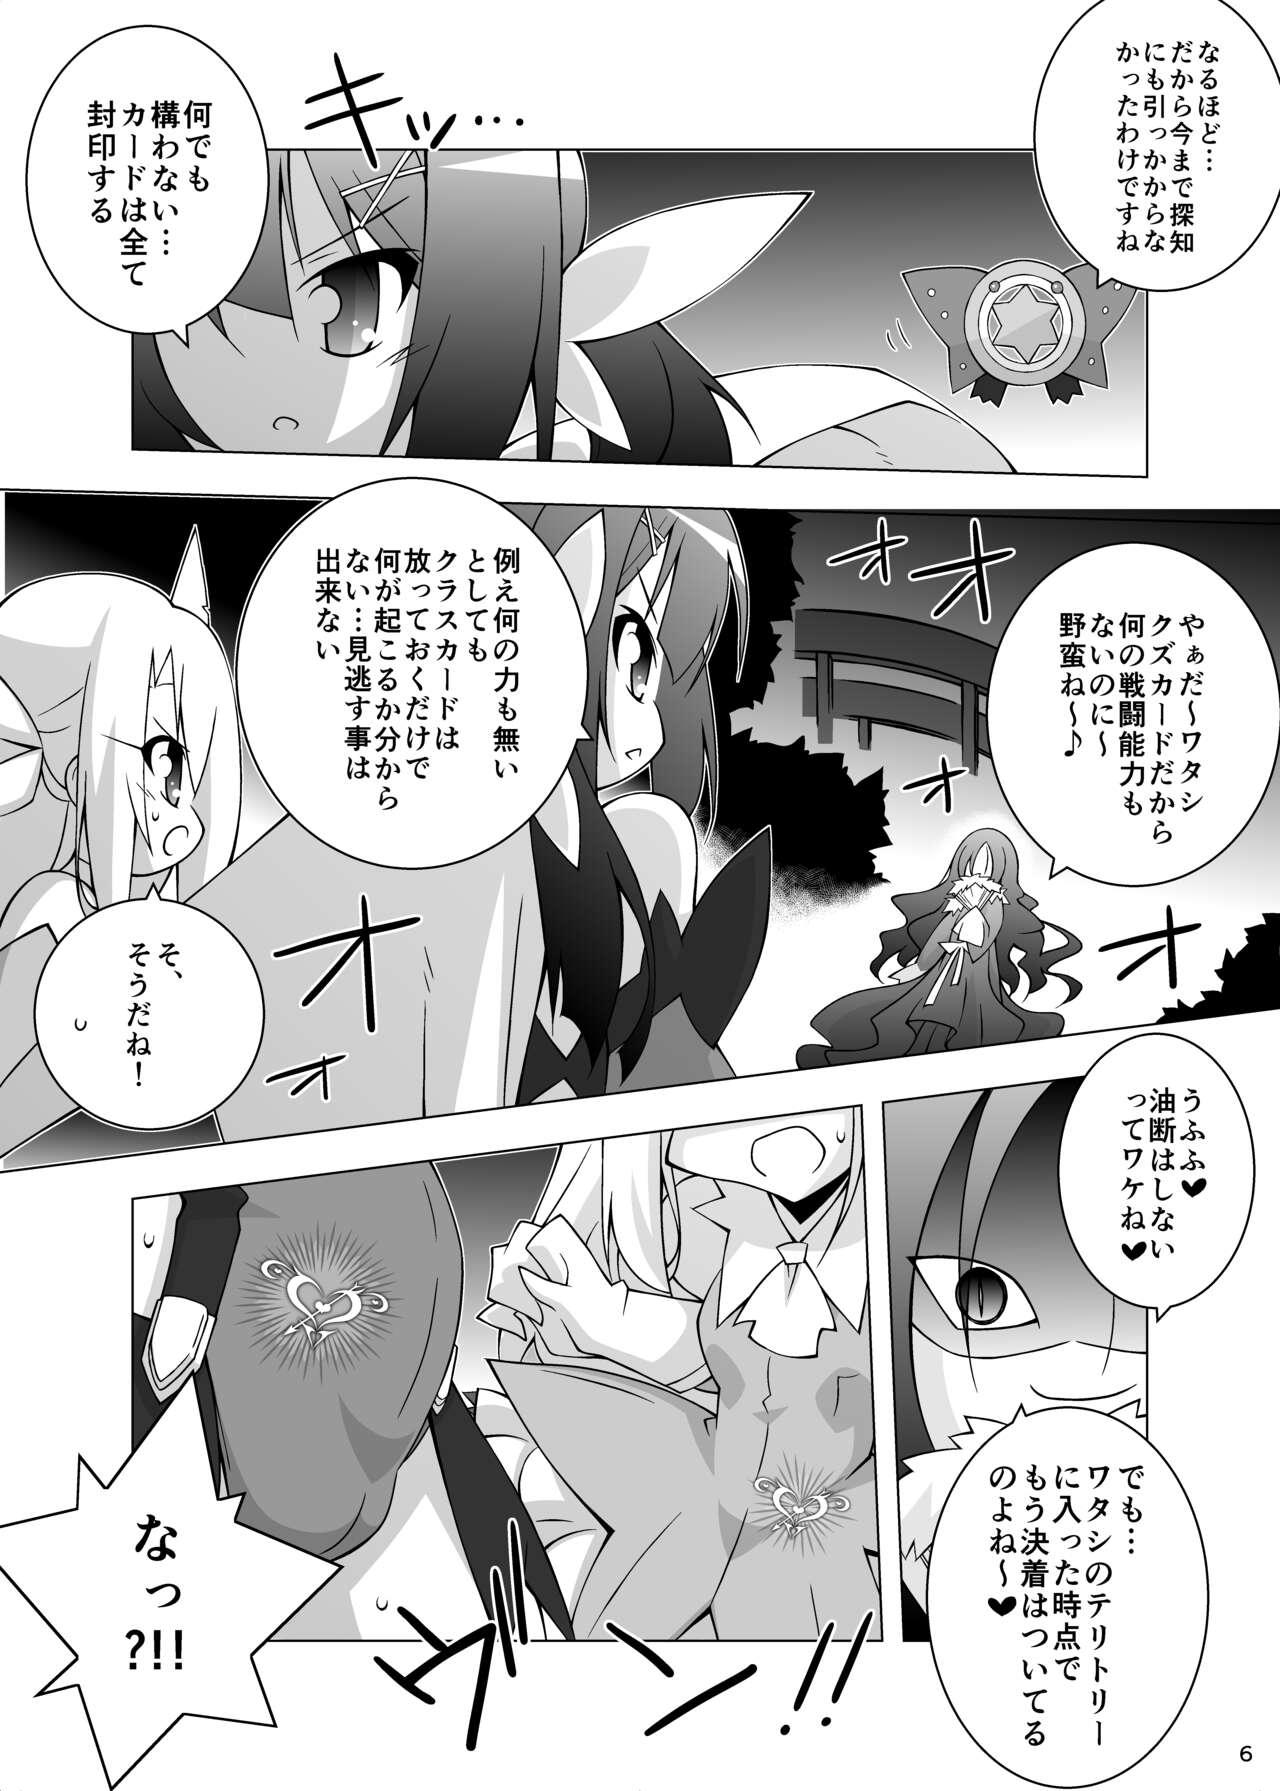 Classy 墮チル魔法少女 - Fate kaleid liner prisma illya Newbie - Page 5